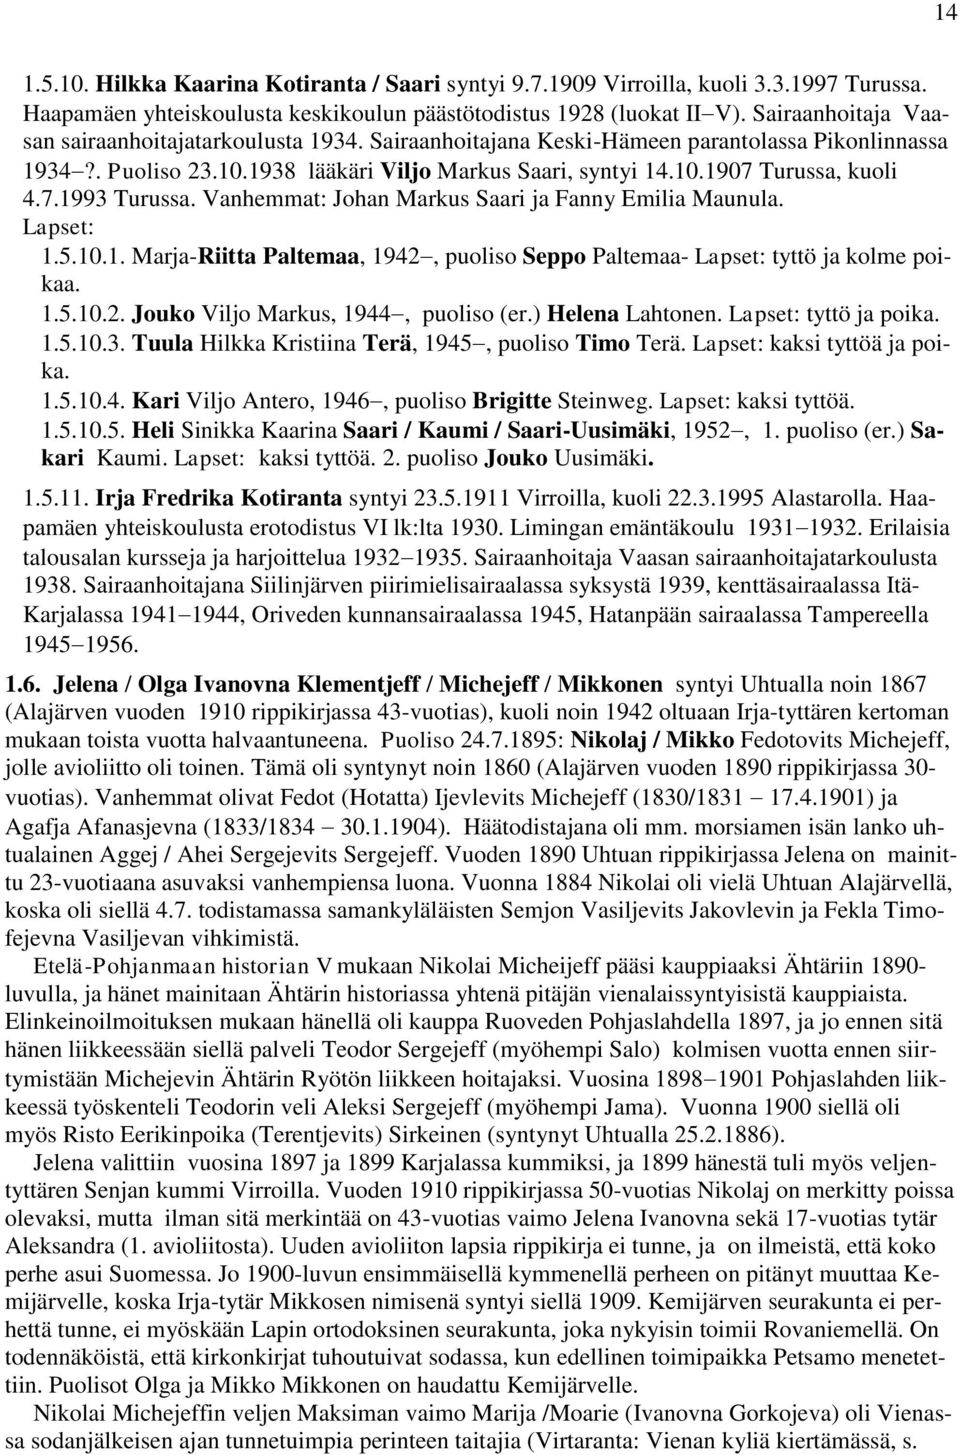 7.1993 Turussa. Vanhemmat: Johan Markus Saari ja Fanny Emilia Maunula. 1.5.10.1. Marja-Riitta Paltemaa, 1942, puoliso Seppo Paltemaa- tyttö ja kolme poikaa. 1.5.10.2. Jouko Viljo Markus, 1944, puoliso (er.